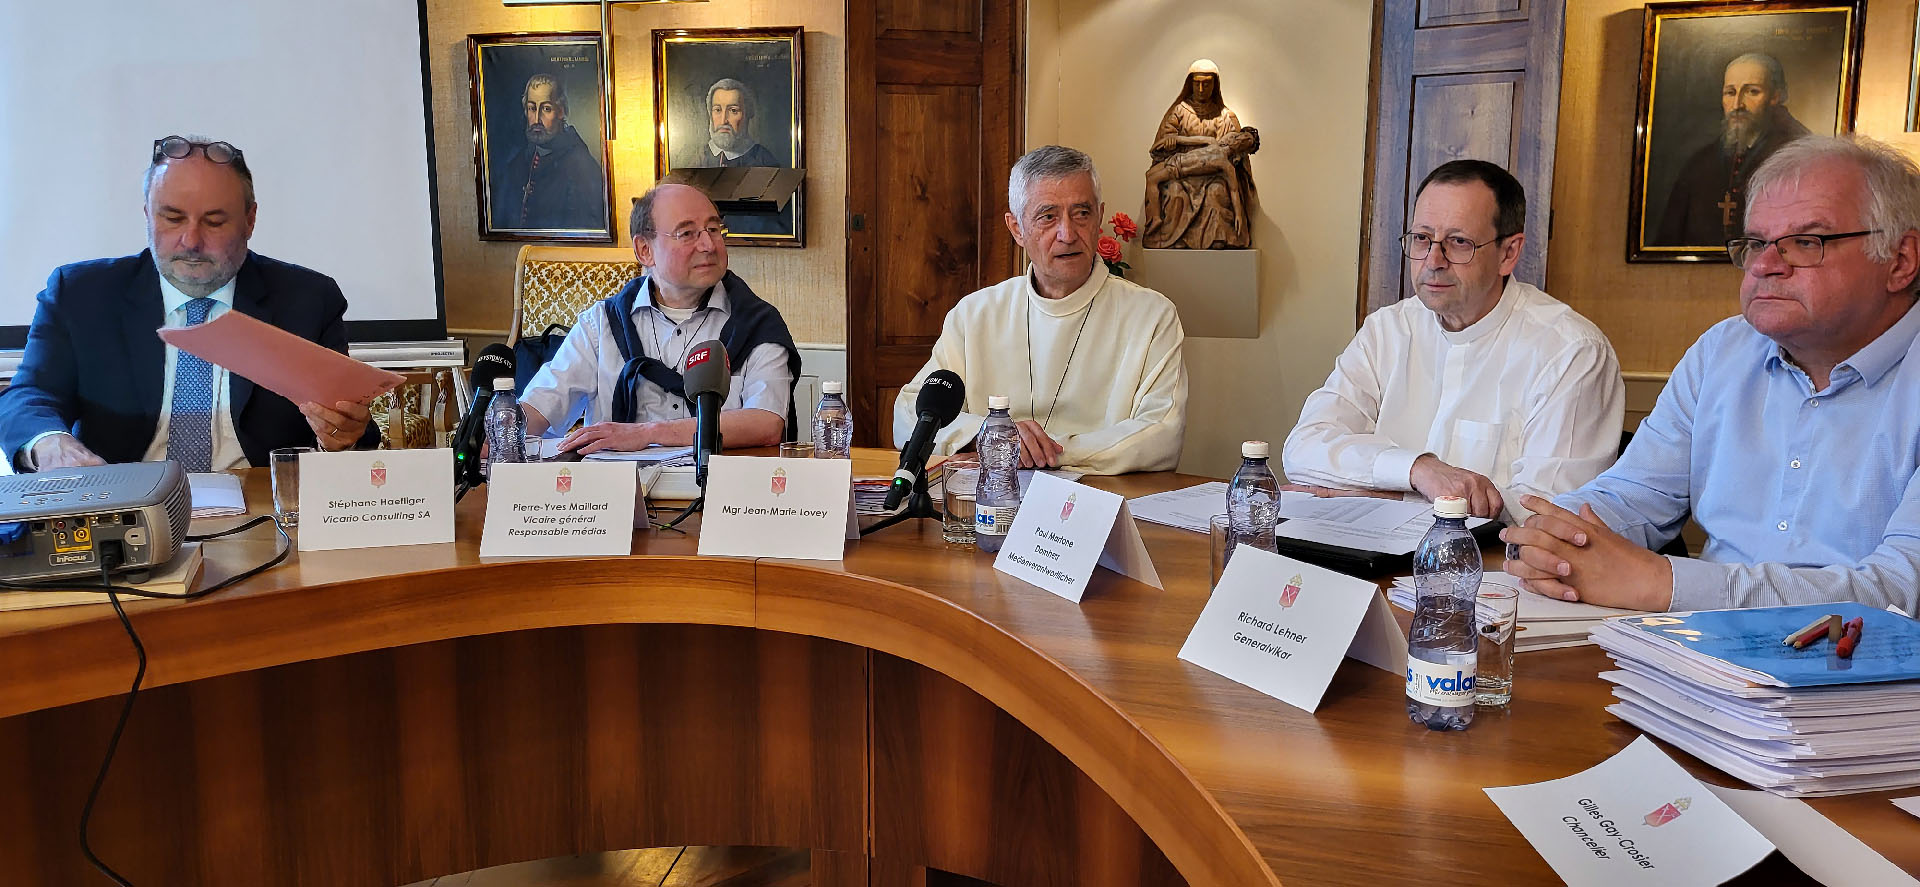 Les responsables du diocèse de Sion ont présenté les conclusions de l'audit sur le traitement des abus | © Lucienne Bittar